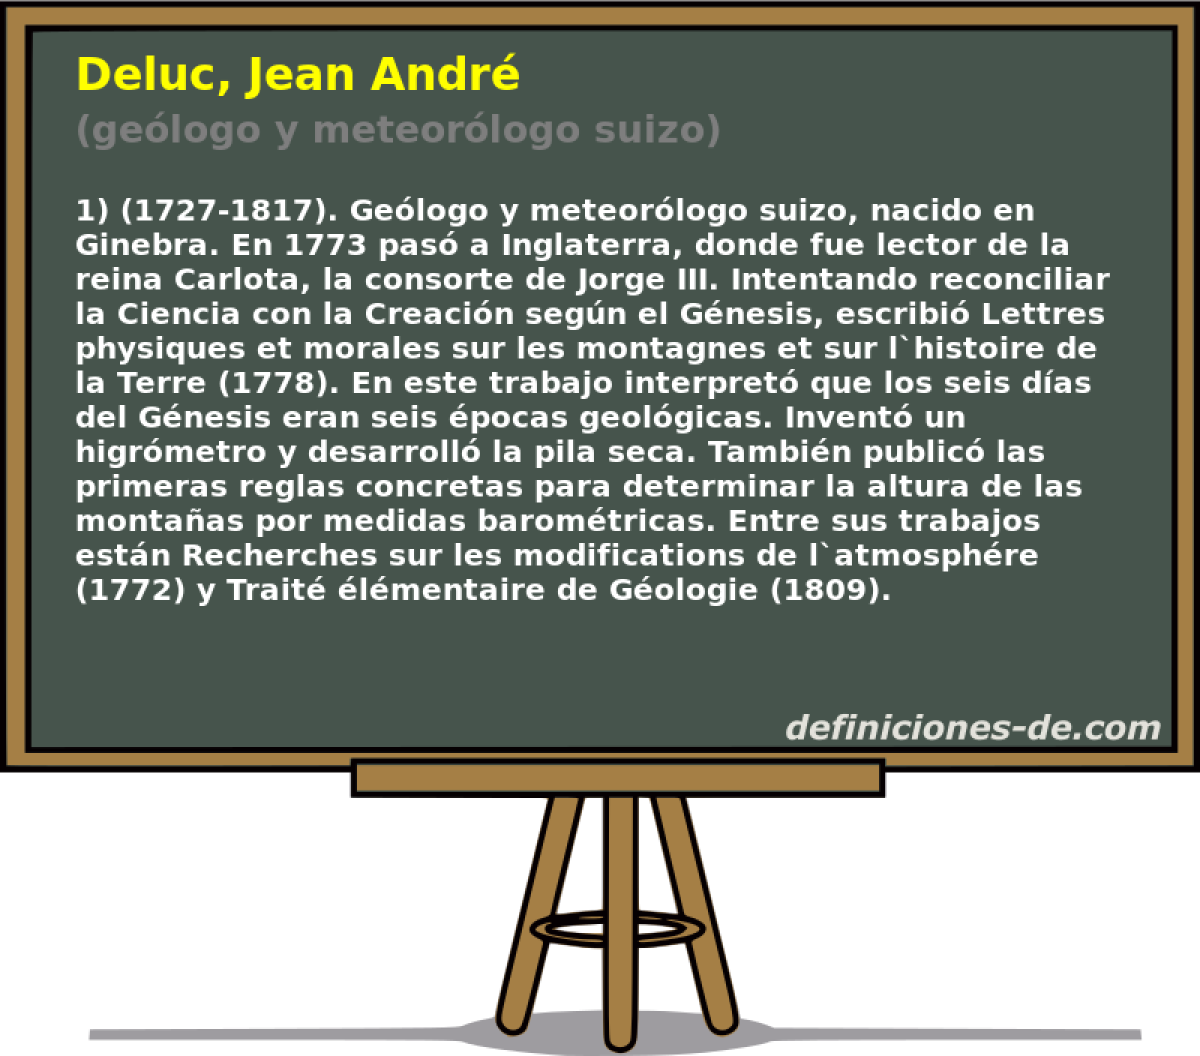 Deluc, Jean Andr (gelogo y meteorlogo suizo)